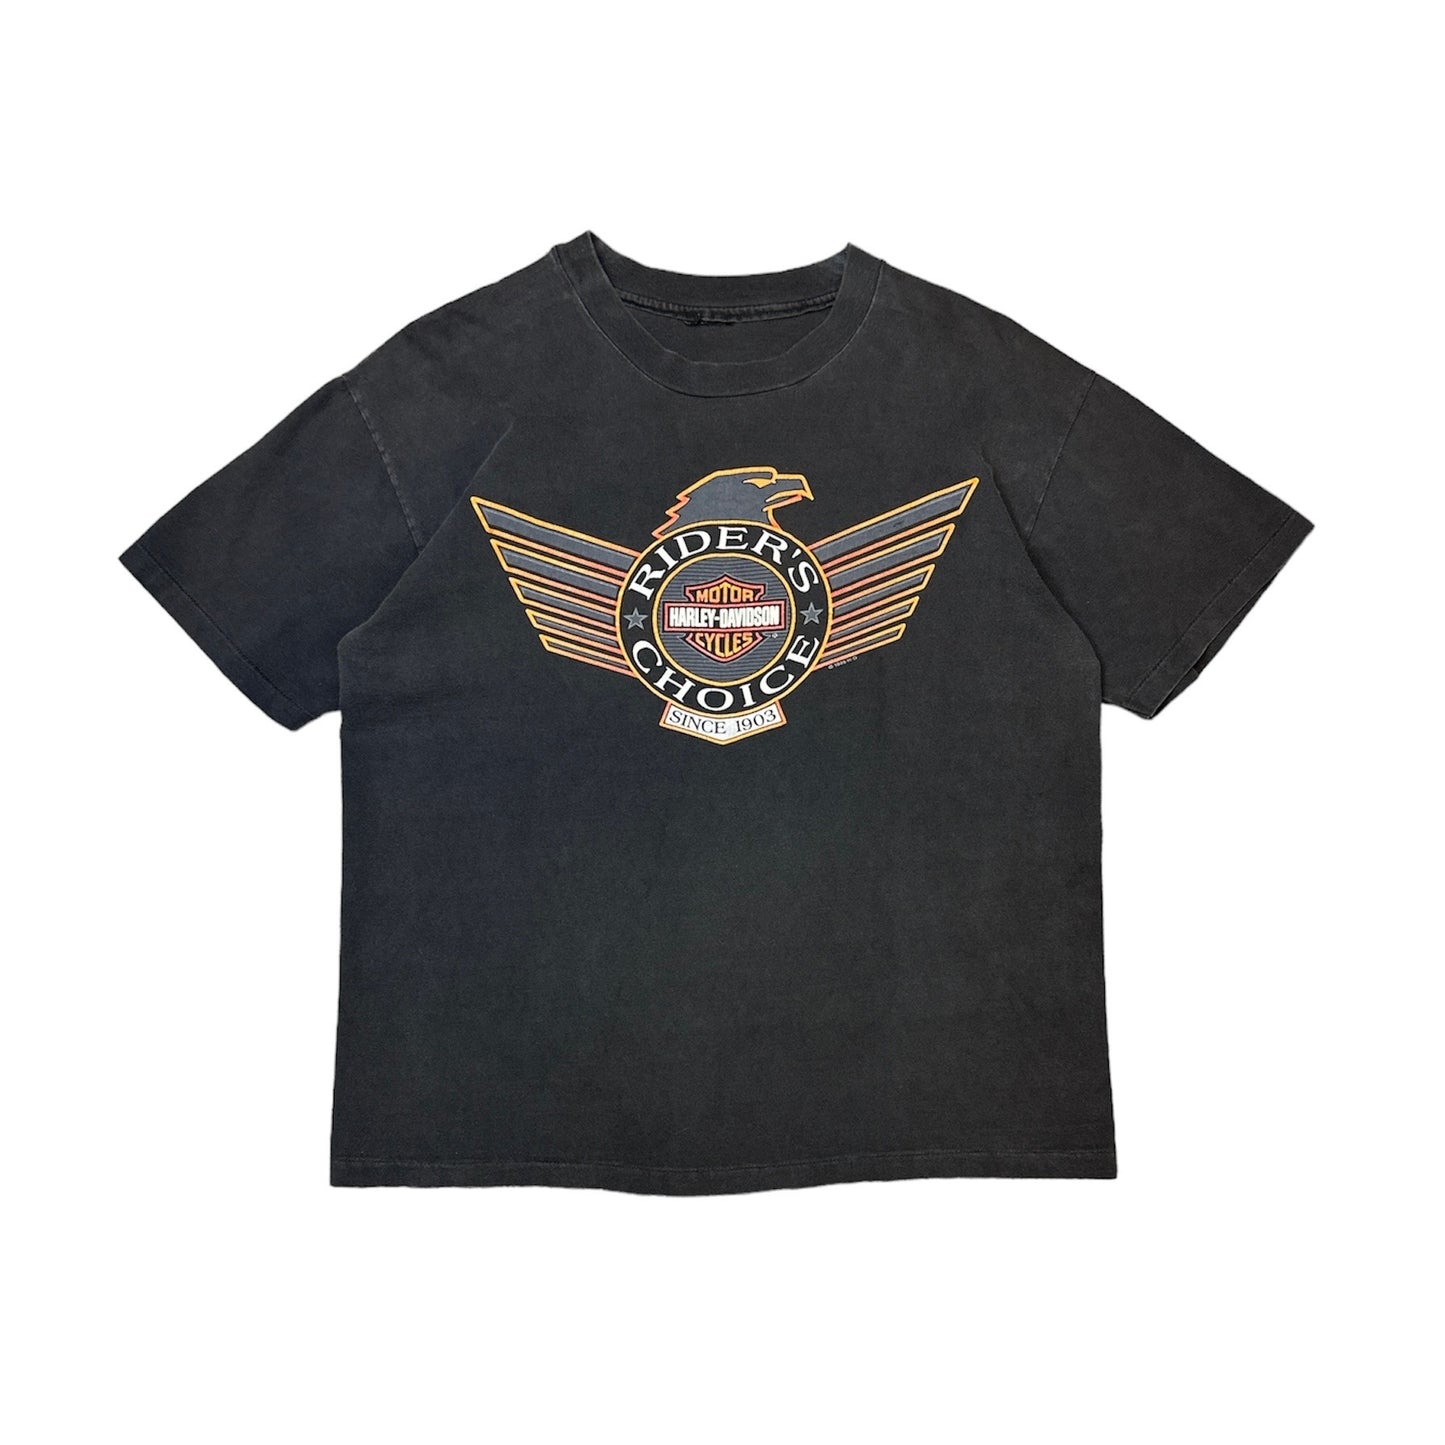 1995 Harley Davidson Riders Choice T-Shirt